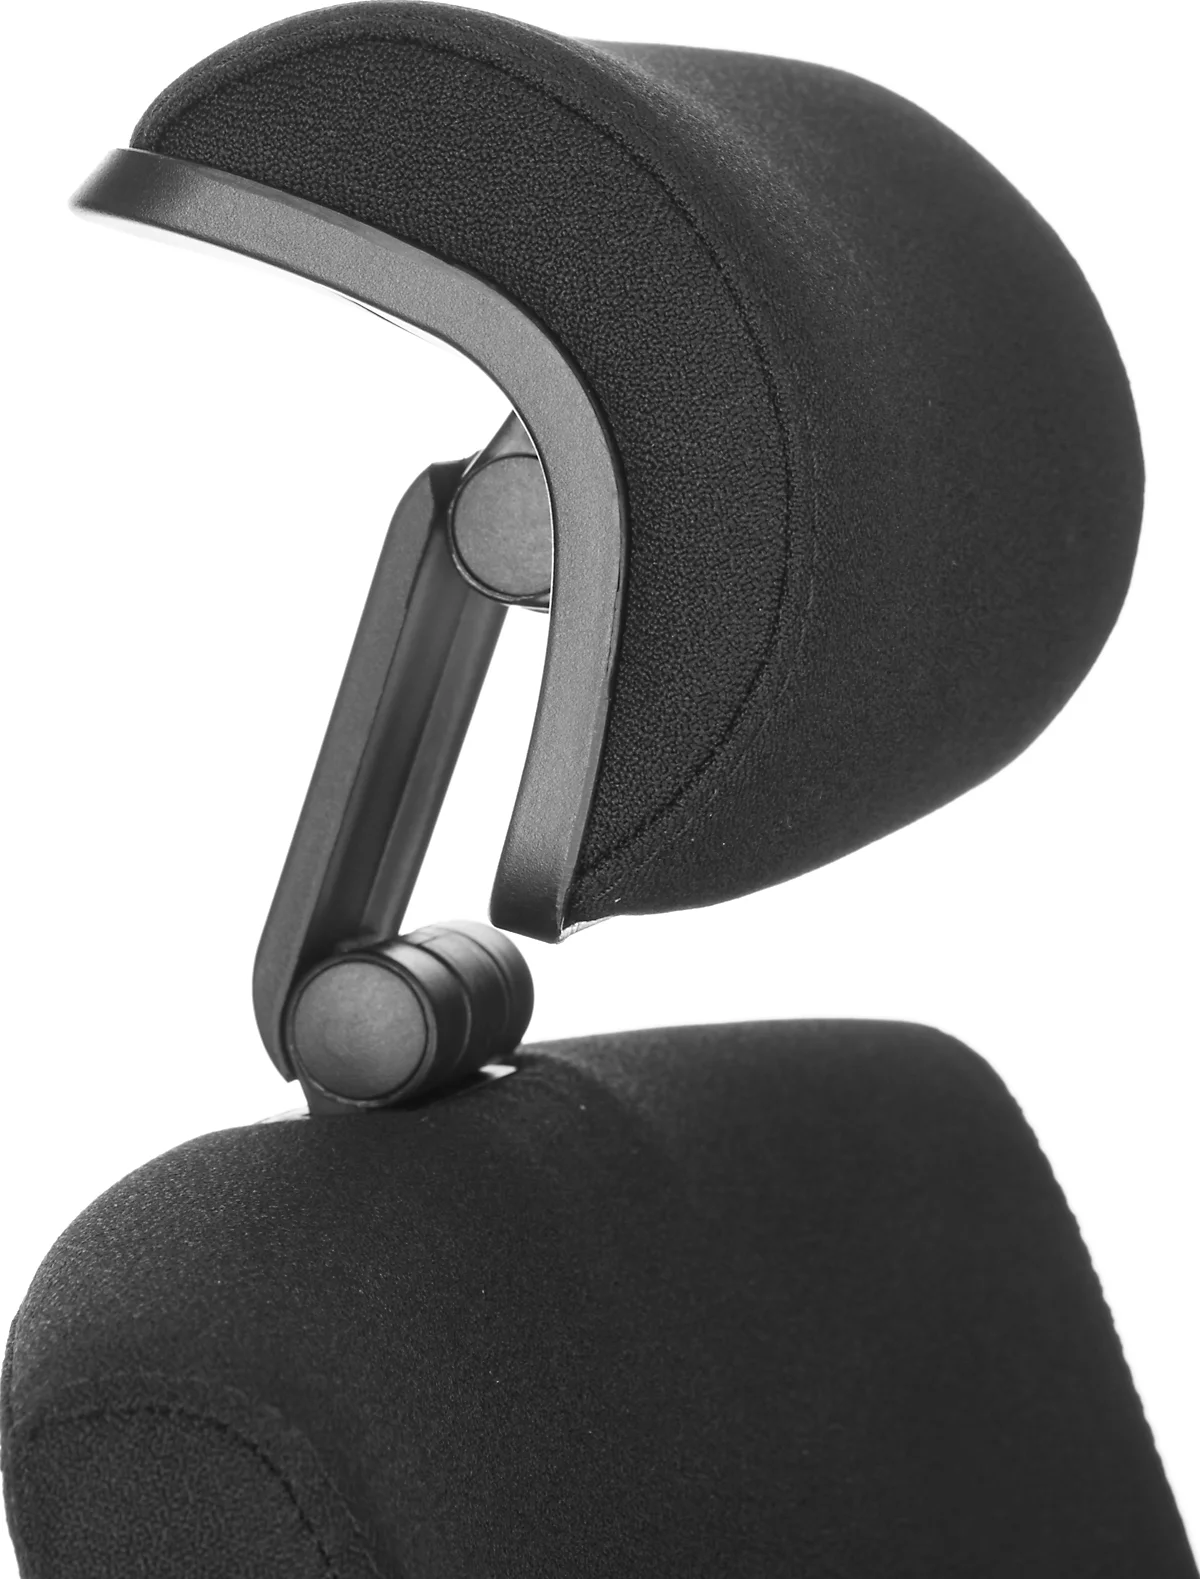 3D-Kopfstütze für Schäfer Shop Select Bürostuhl T4, drehbar, höhen- und  tiefenverstellbar günstig kaufen